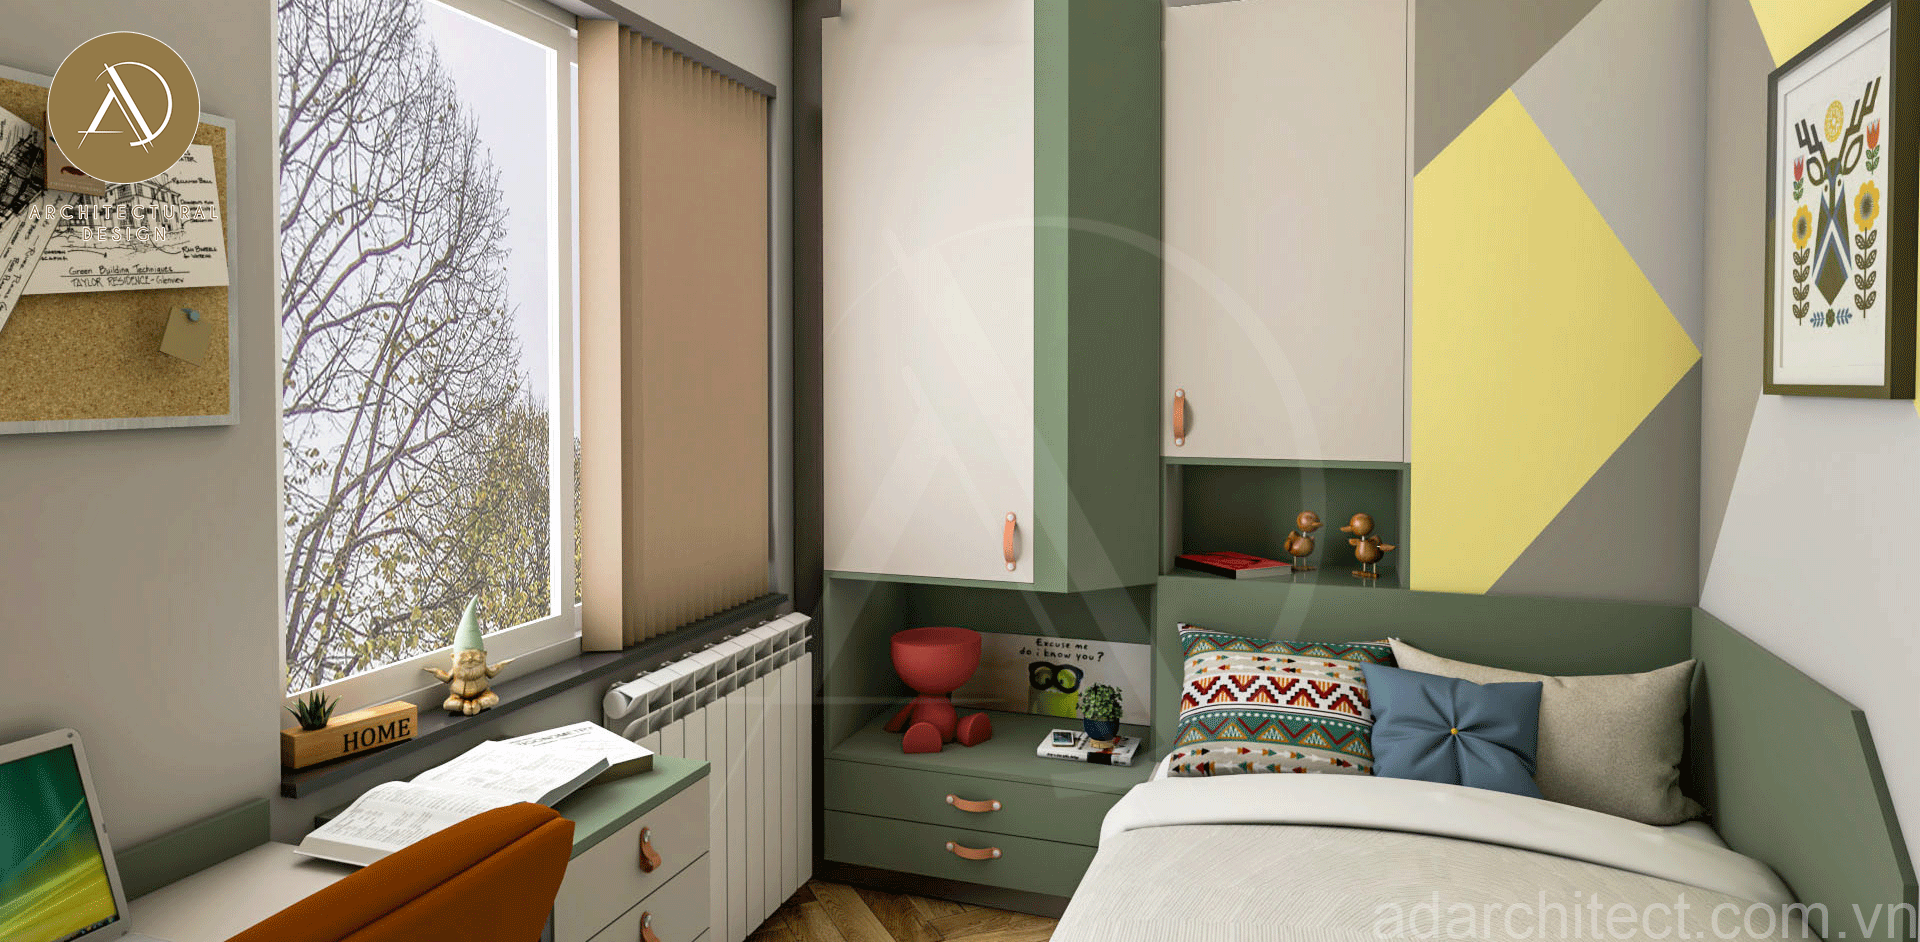 thiết kế phòng ngủ mini đẹp có cửa sổ thoáng mát cho nhà 2 tầng đơn giản